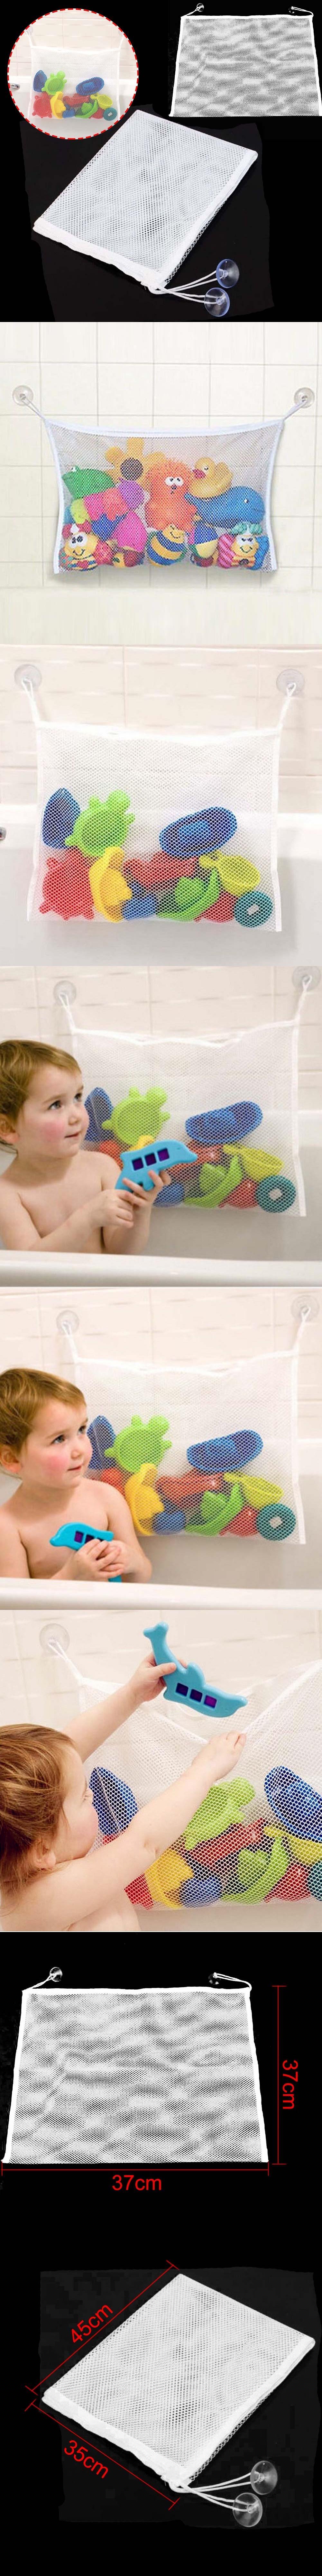 Baby Child Bath Tub Toy Tidy Storage Suction Cup Bag Mesh Net Organizer MA